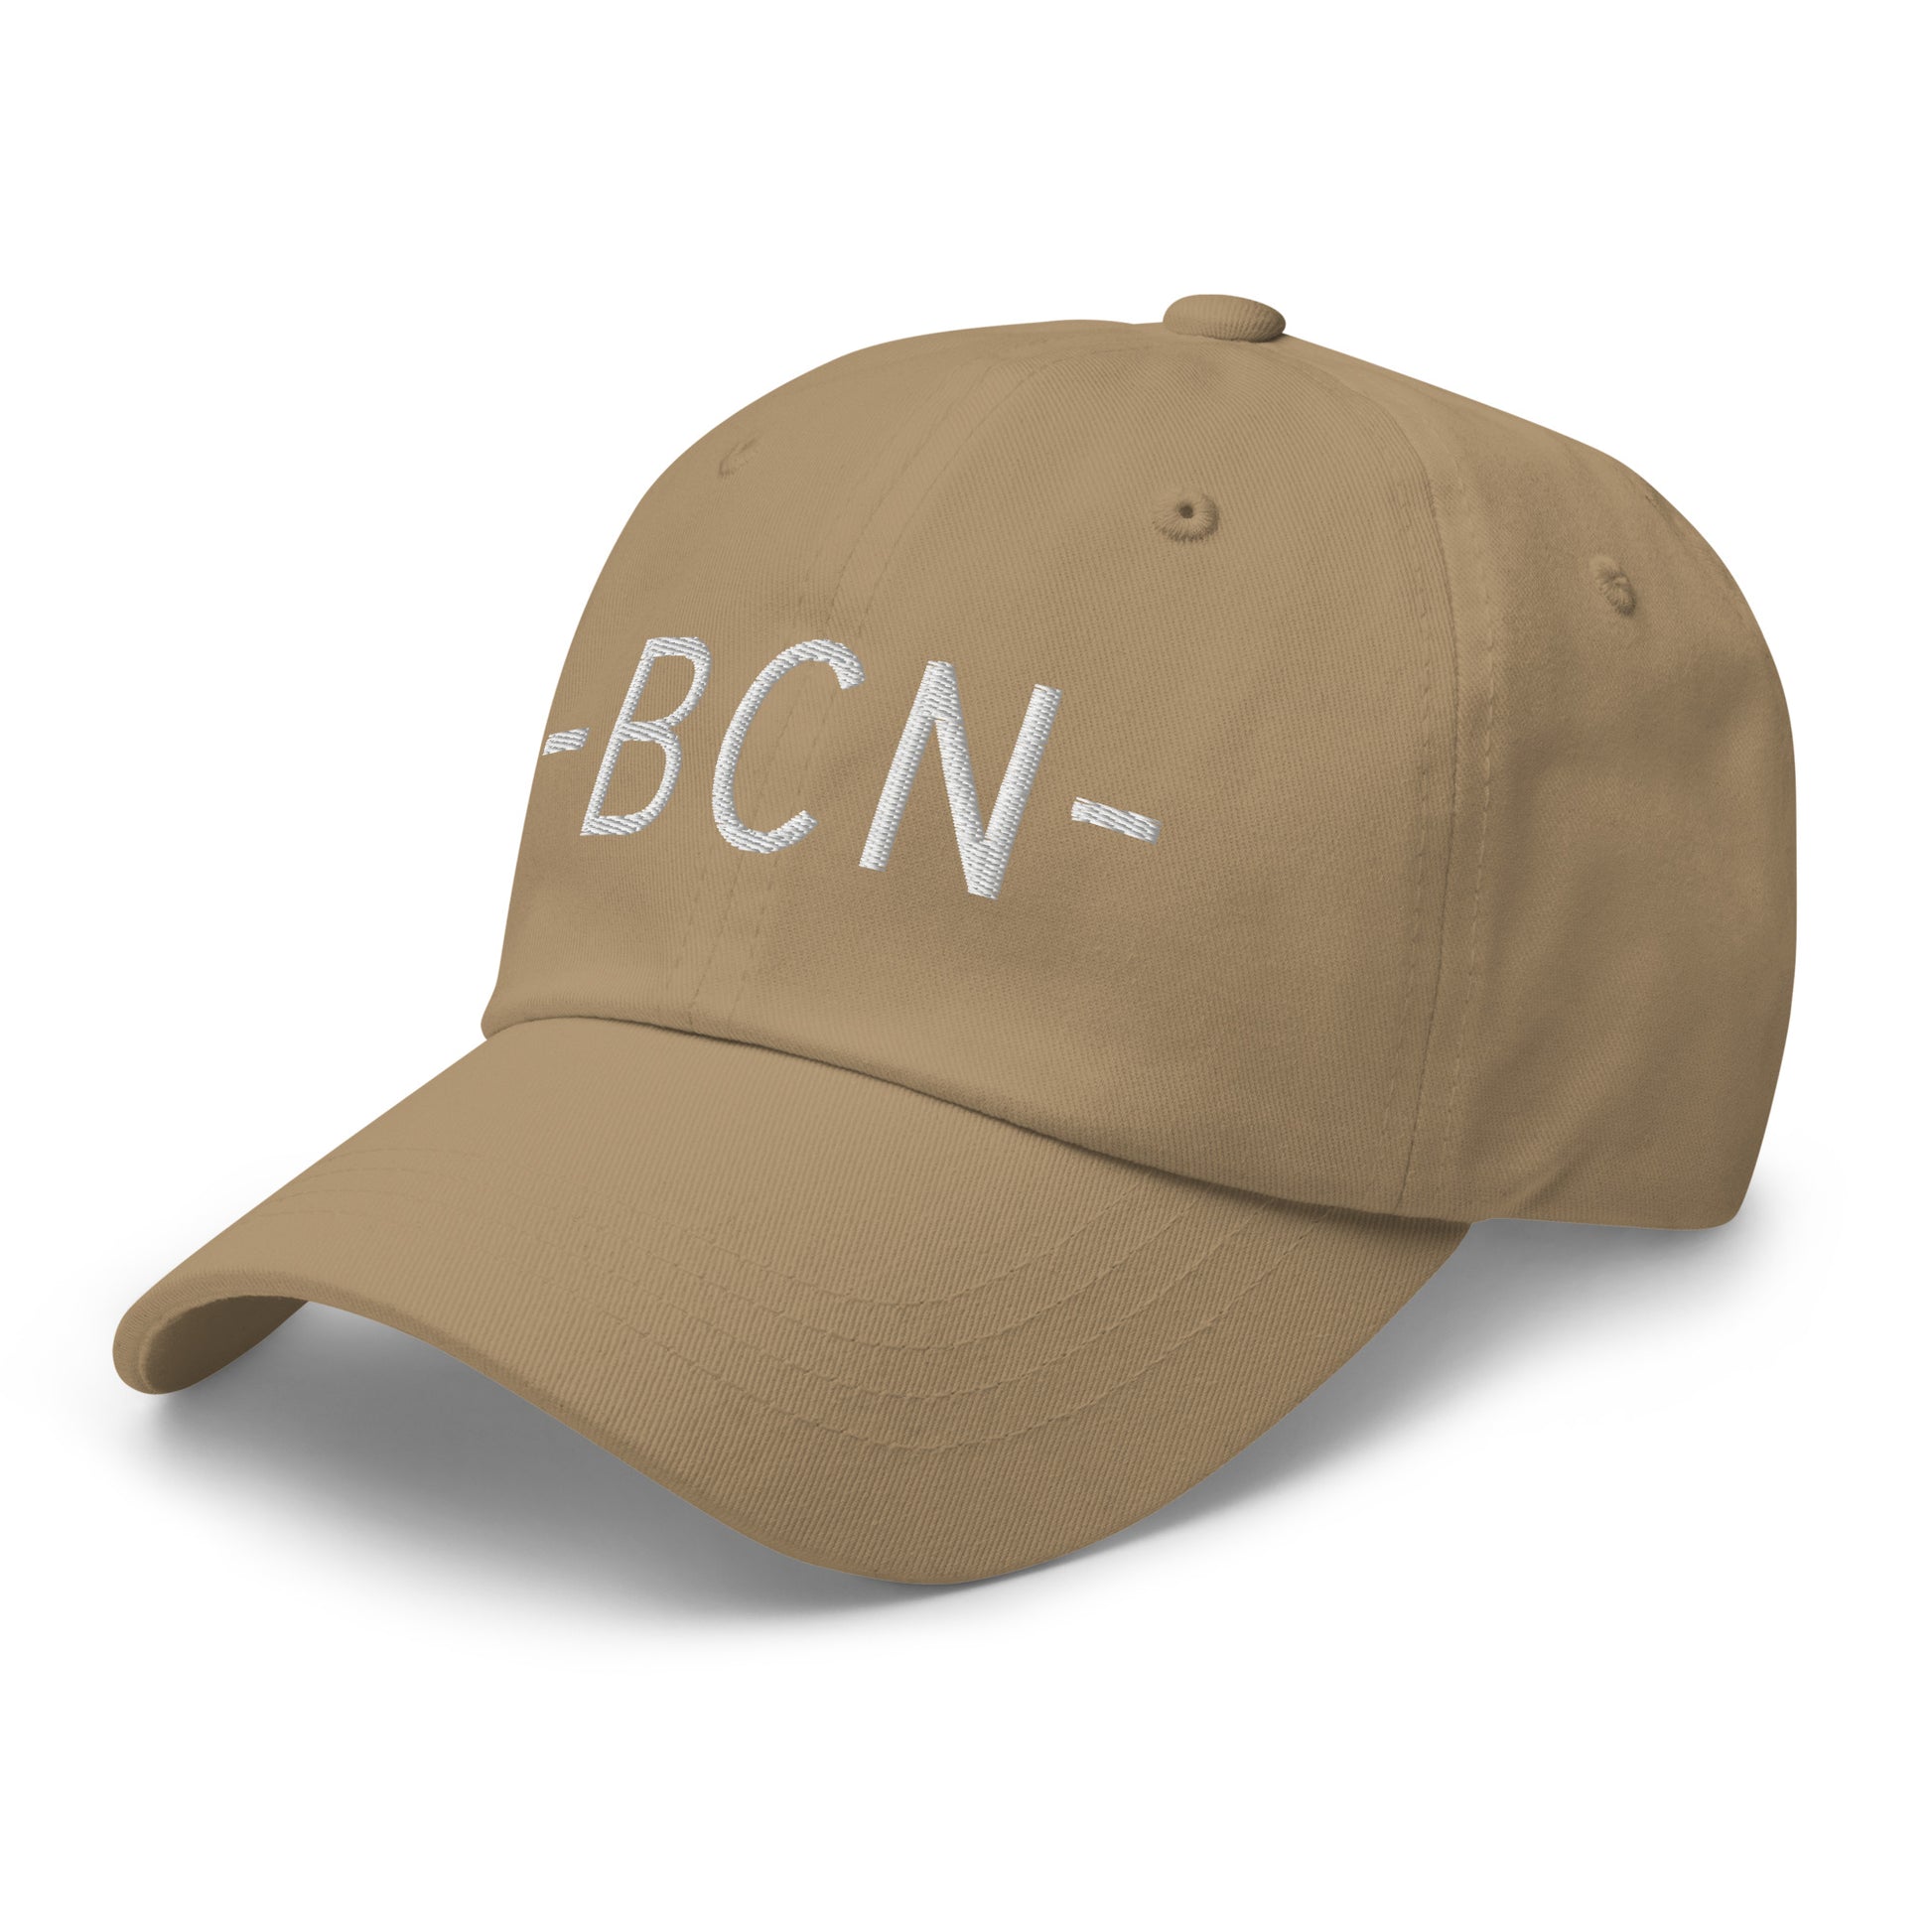 Souvenir Baseball Cap - White • BCN Barcelona • YHM Designs - Image 22